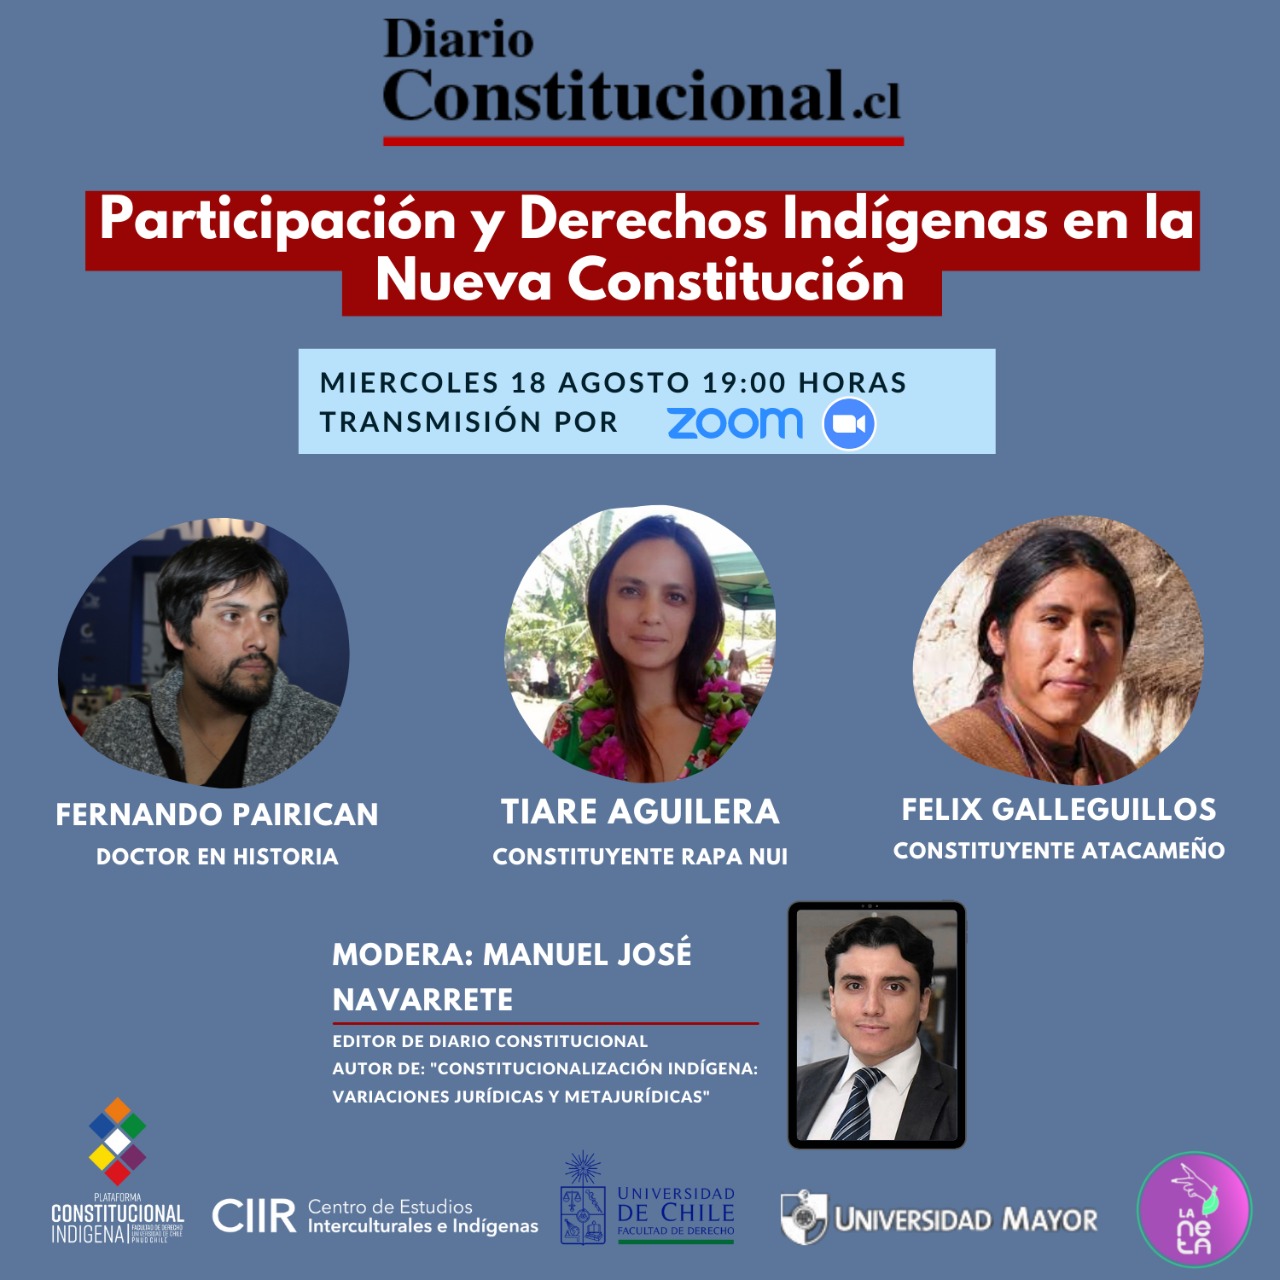 Diario Constitucional invita al coloquio “Participación y Derechos Indígenas en la Nueva Constitución”